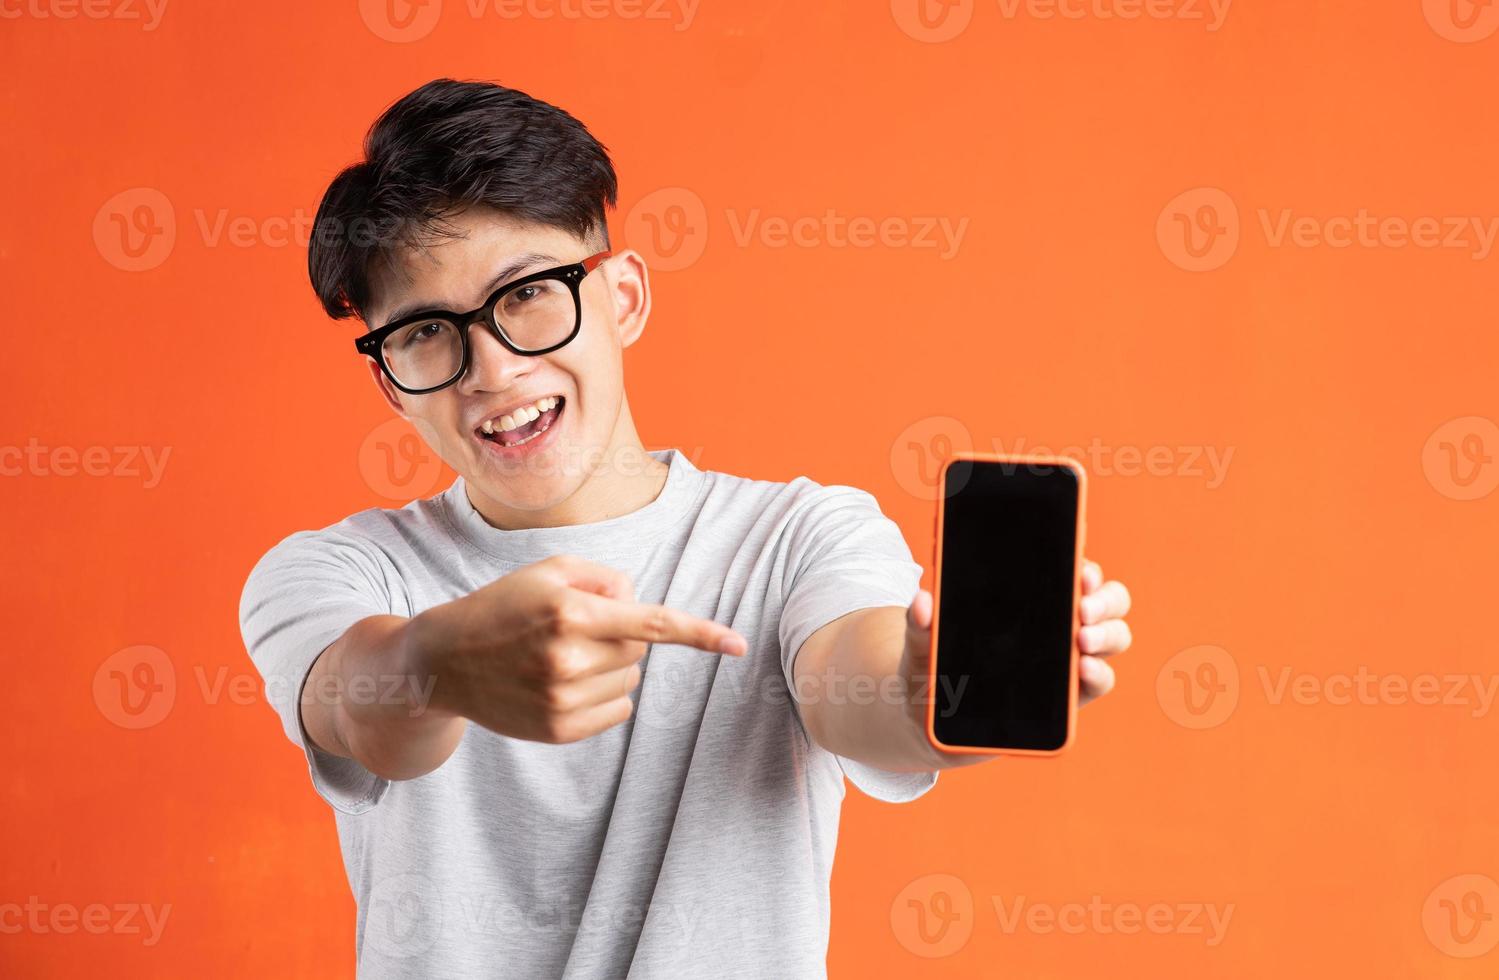 retrato de jovem asiático apontando para a tela do telefone, isolado em um fundo laranja foto